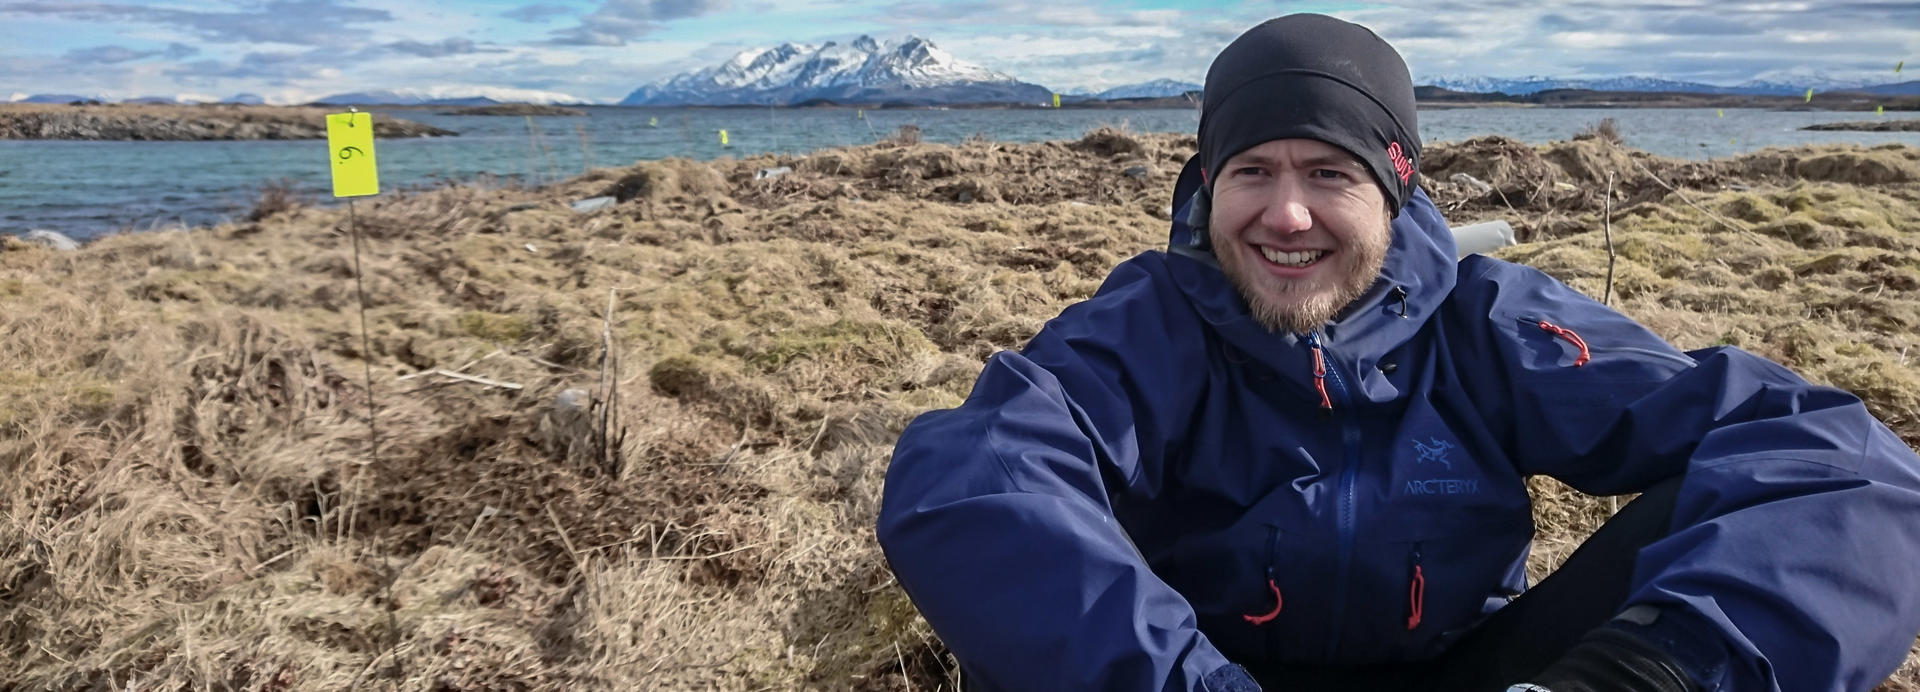 Sindre Lysfjord Sommerli er stipendiat ved NTNU og kartlegger vånd for Senter for biodiversitetsdynamikk (CBD). // Foto: Henrik Pärn